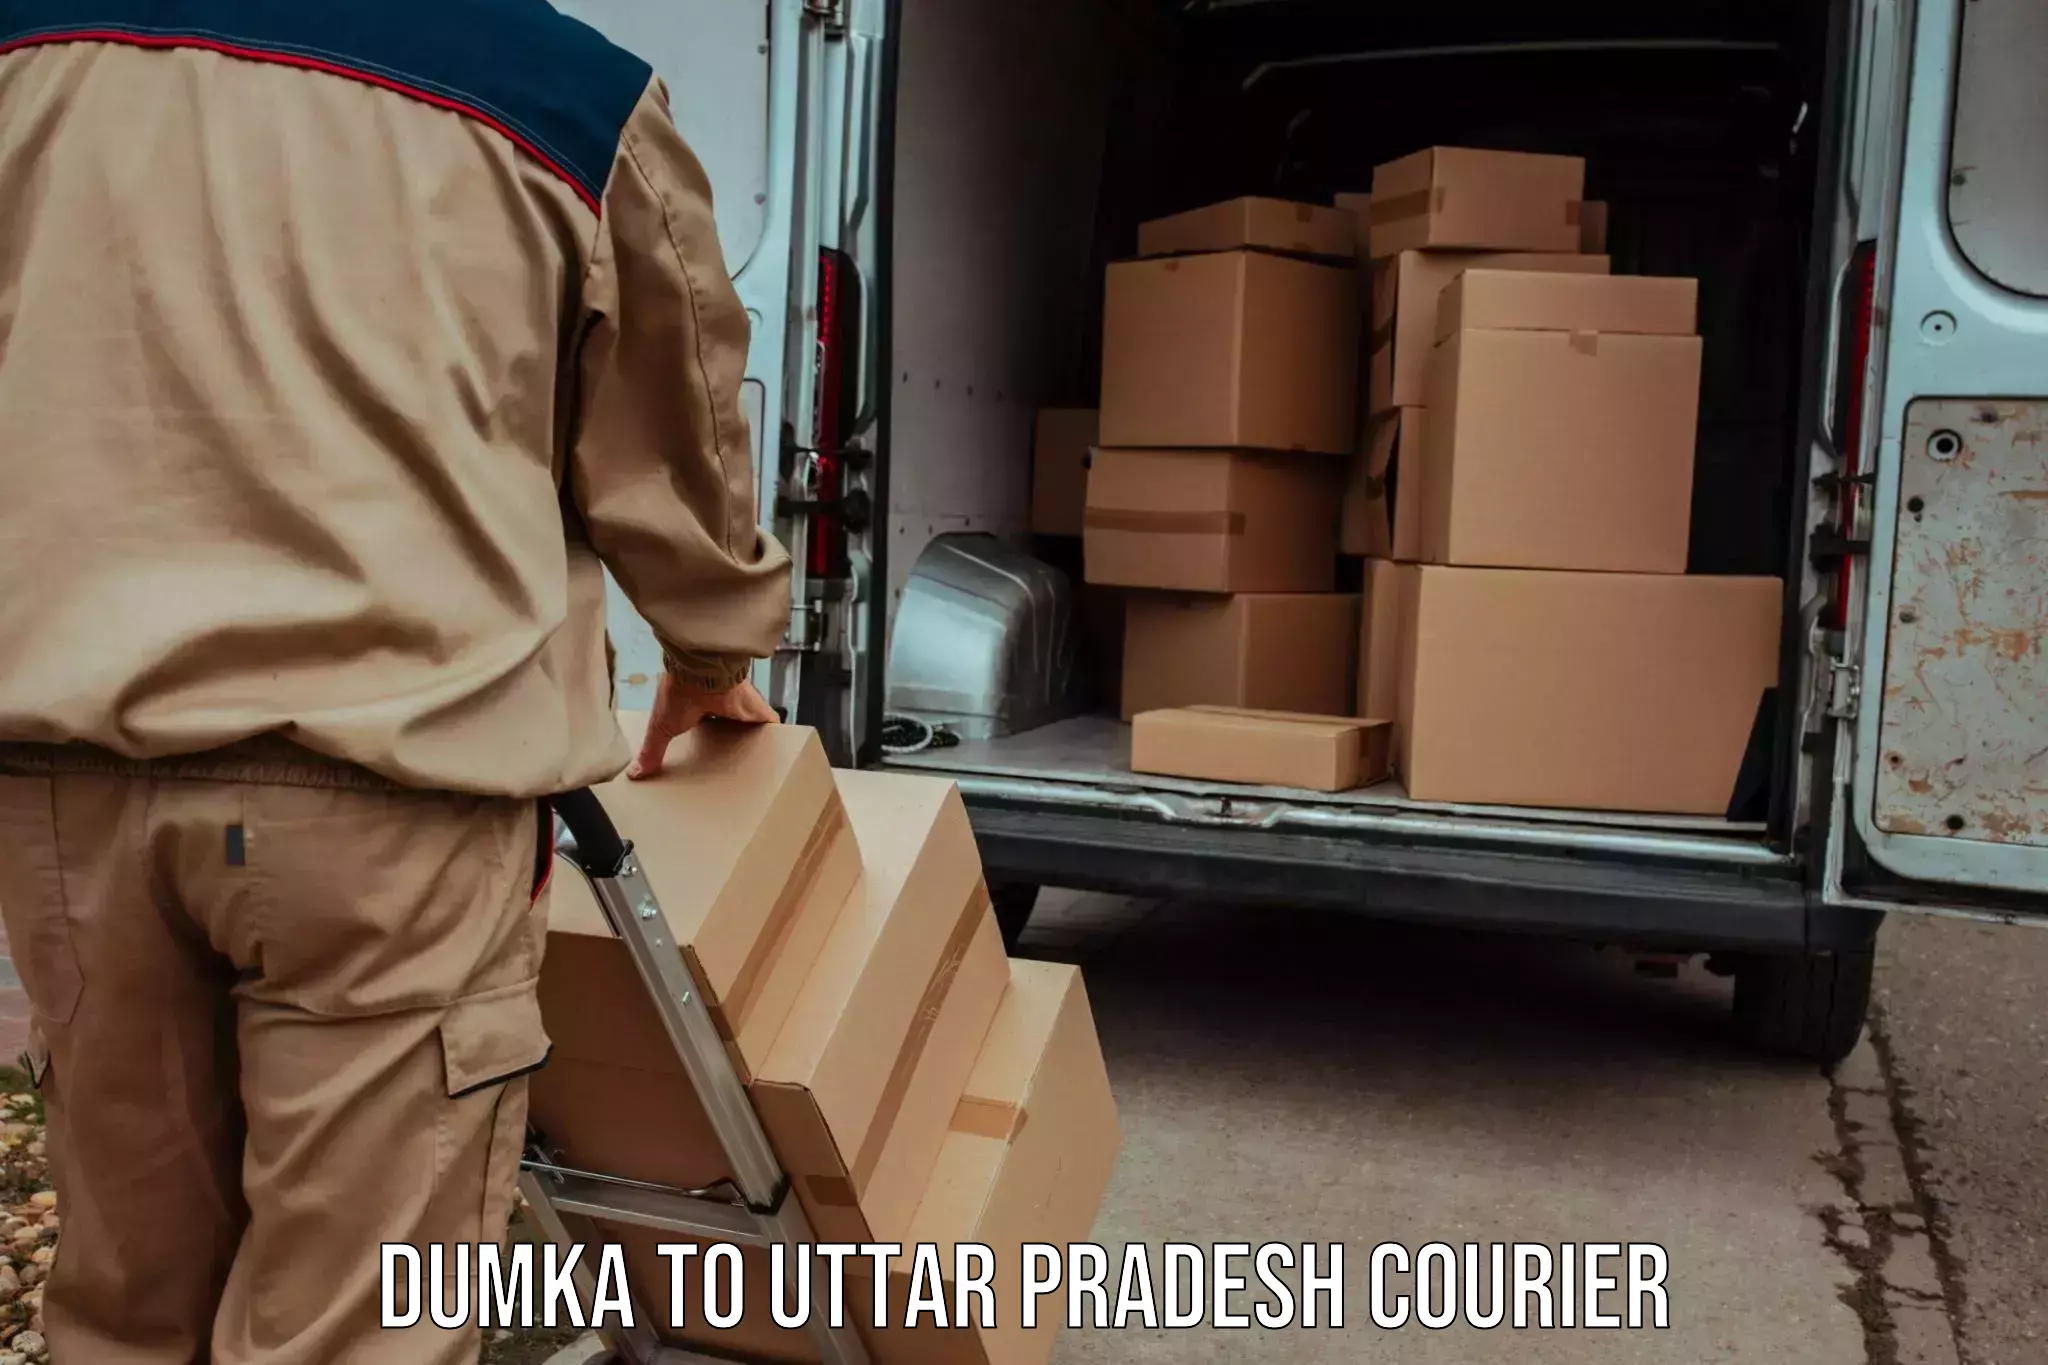 User-friendly courier app Dumka to Uttar Pradesh